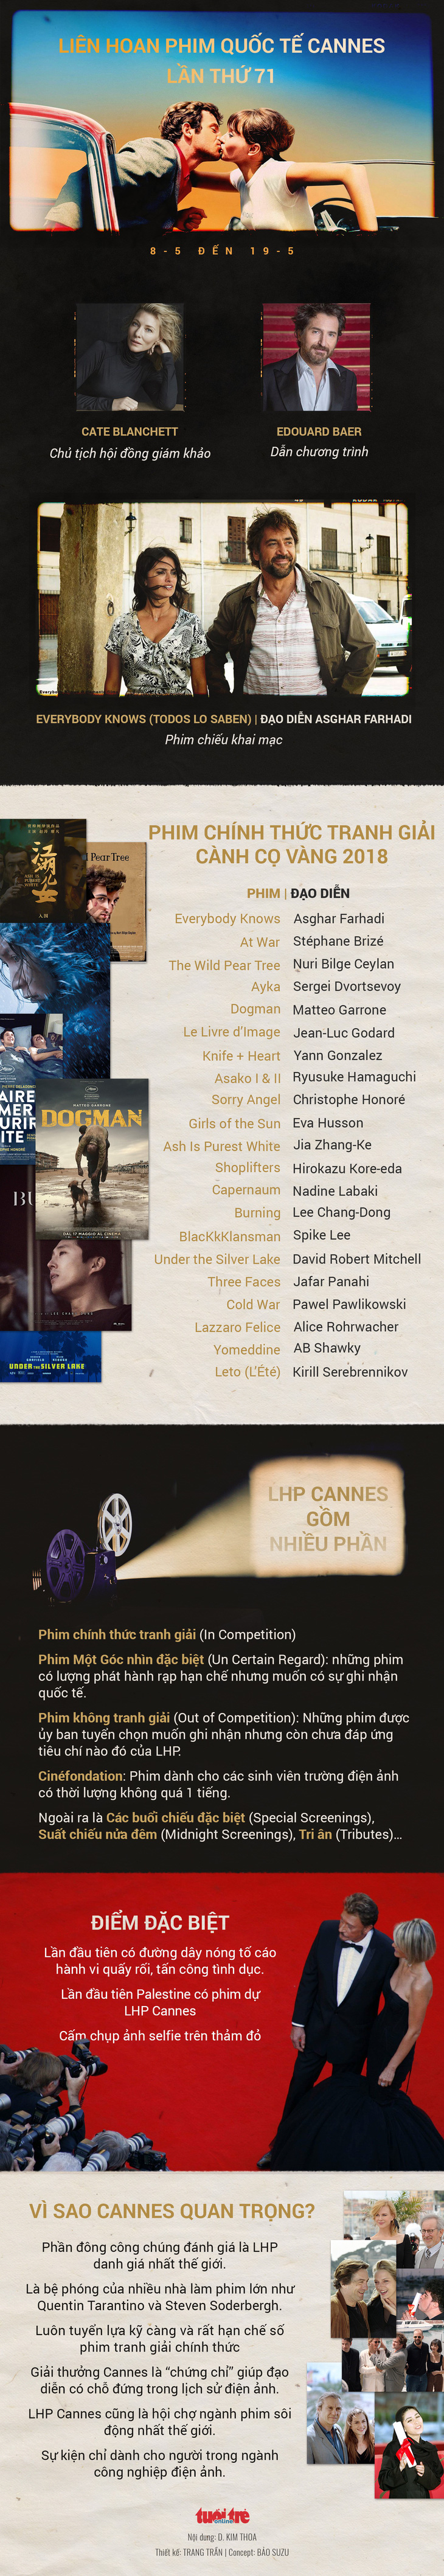 Cành Cọ Vàng của Cannes 2018 sẽ thuộc về điện ảnh Hàn Quốc? - Ảnh 9.